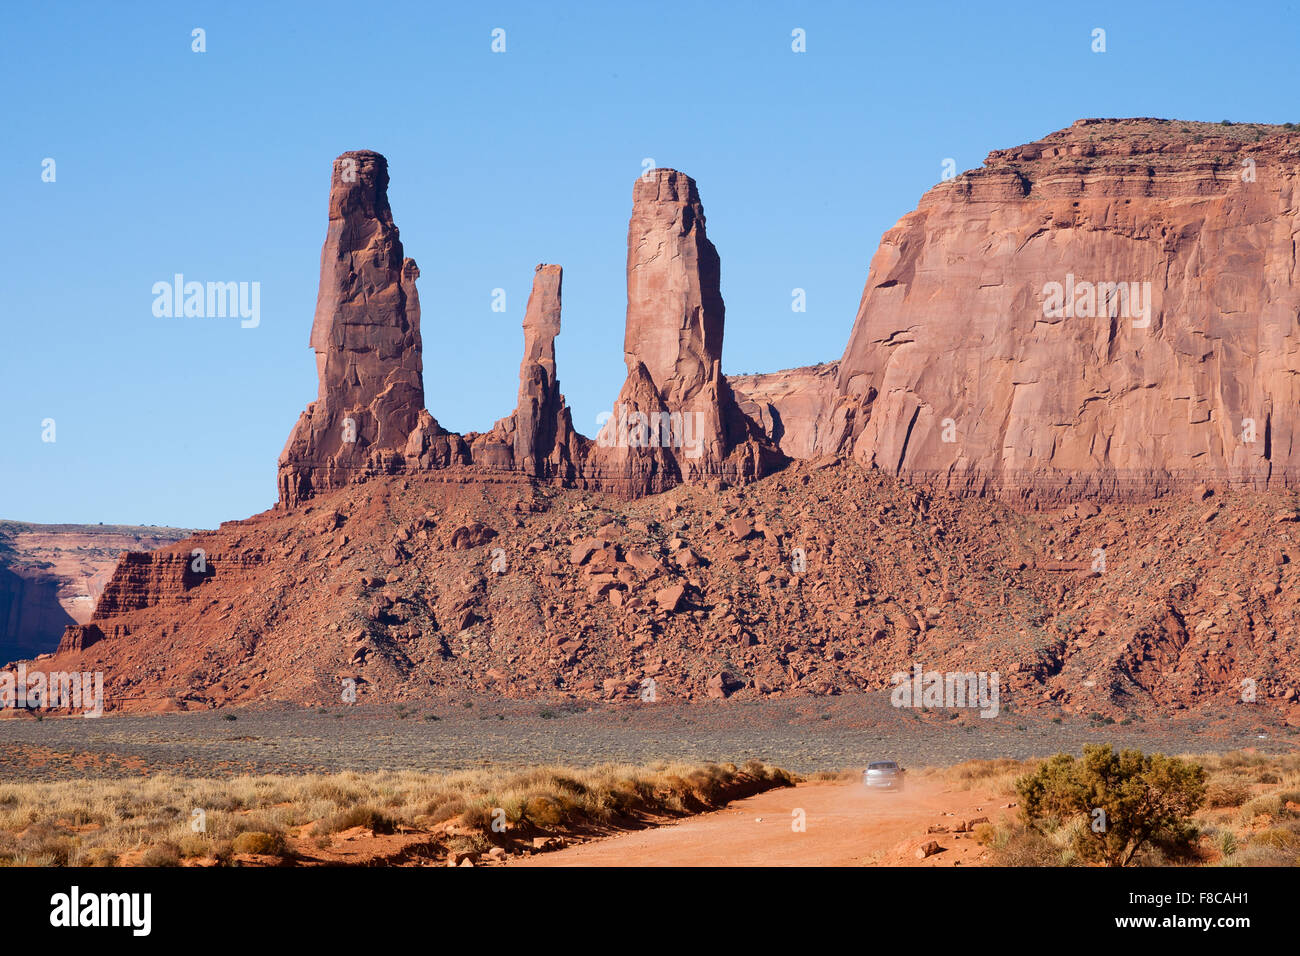 Monument Valley, Arizona. Auto fahren auf unbefestigten Straße mit drei Schwestern Rock im Hintergrund. Stockfoto